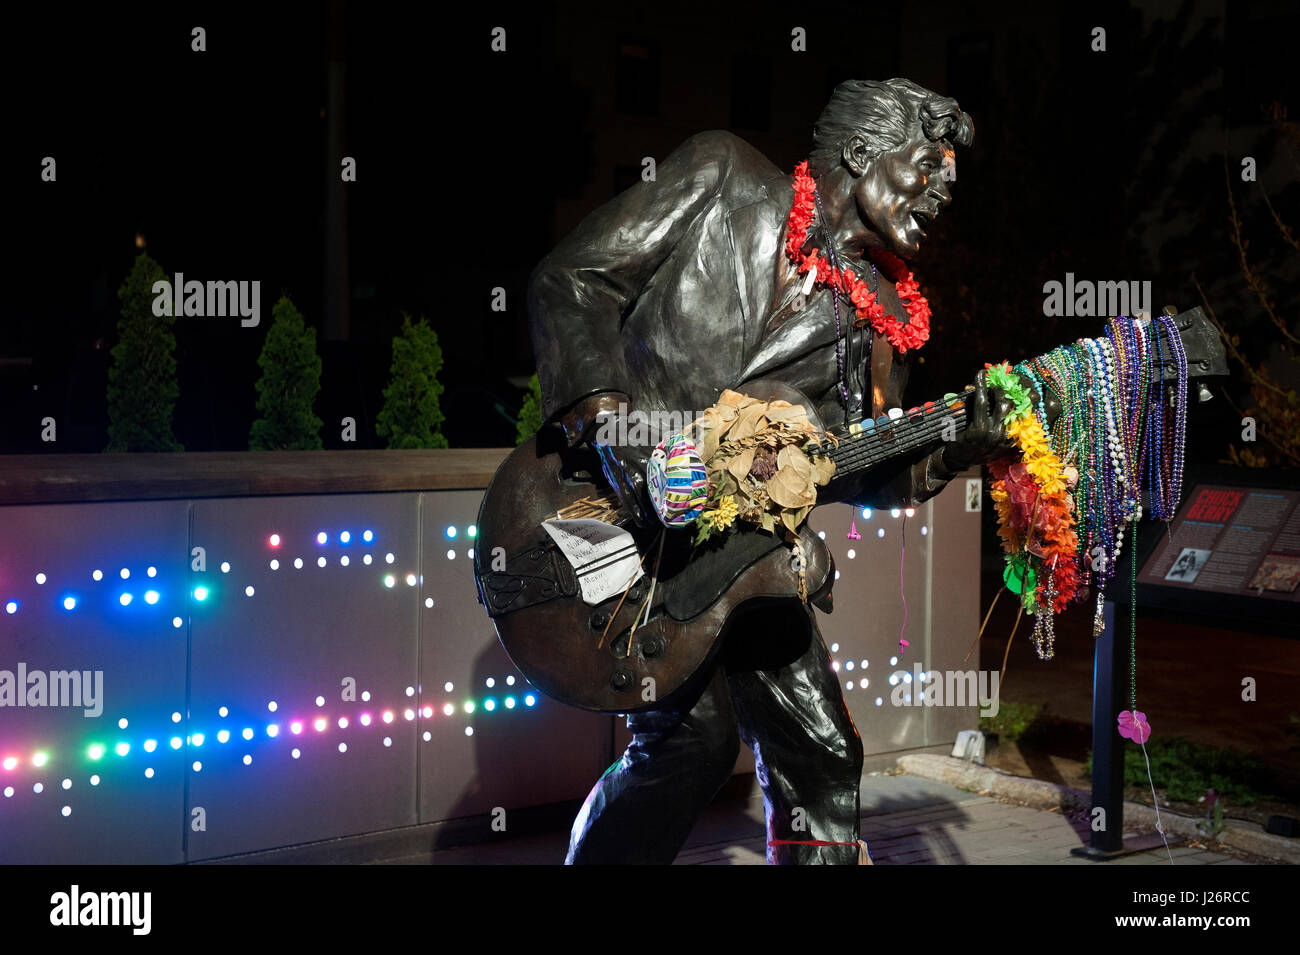 Blumen, Notizen und Halsketten schmücken die Statue des Rock and Roll Hall of Fame-Musikers Chuck Berry nach seinem Tod 2017. Stockfoto